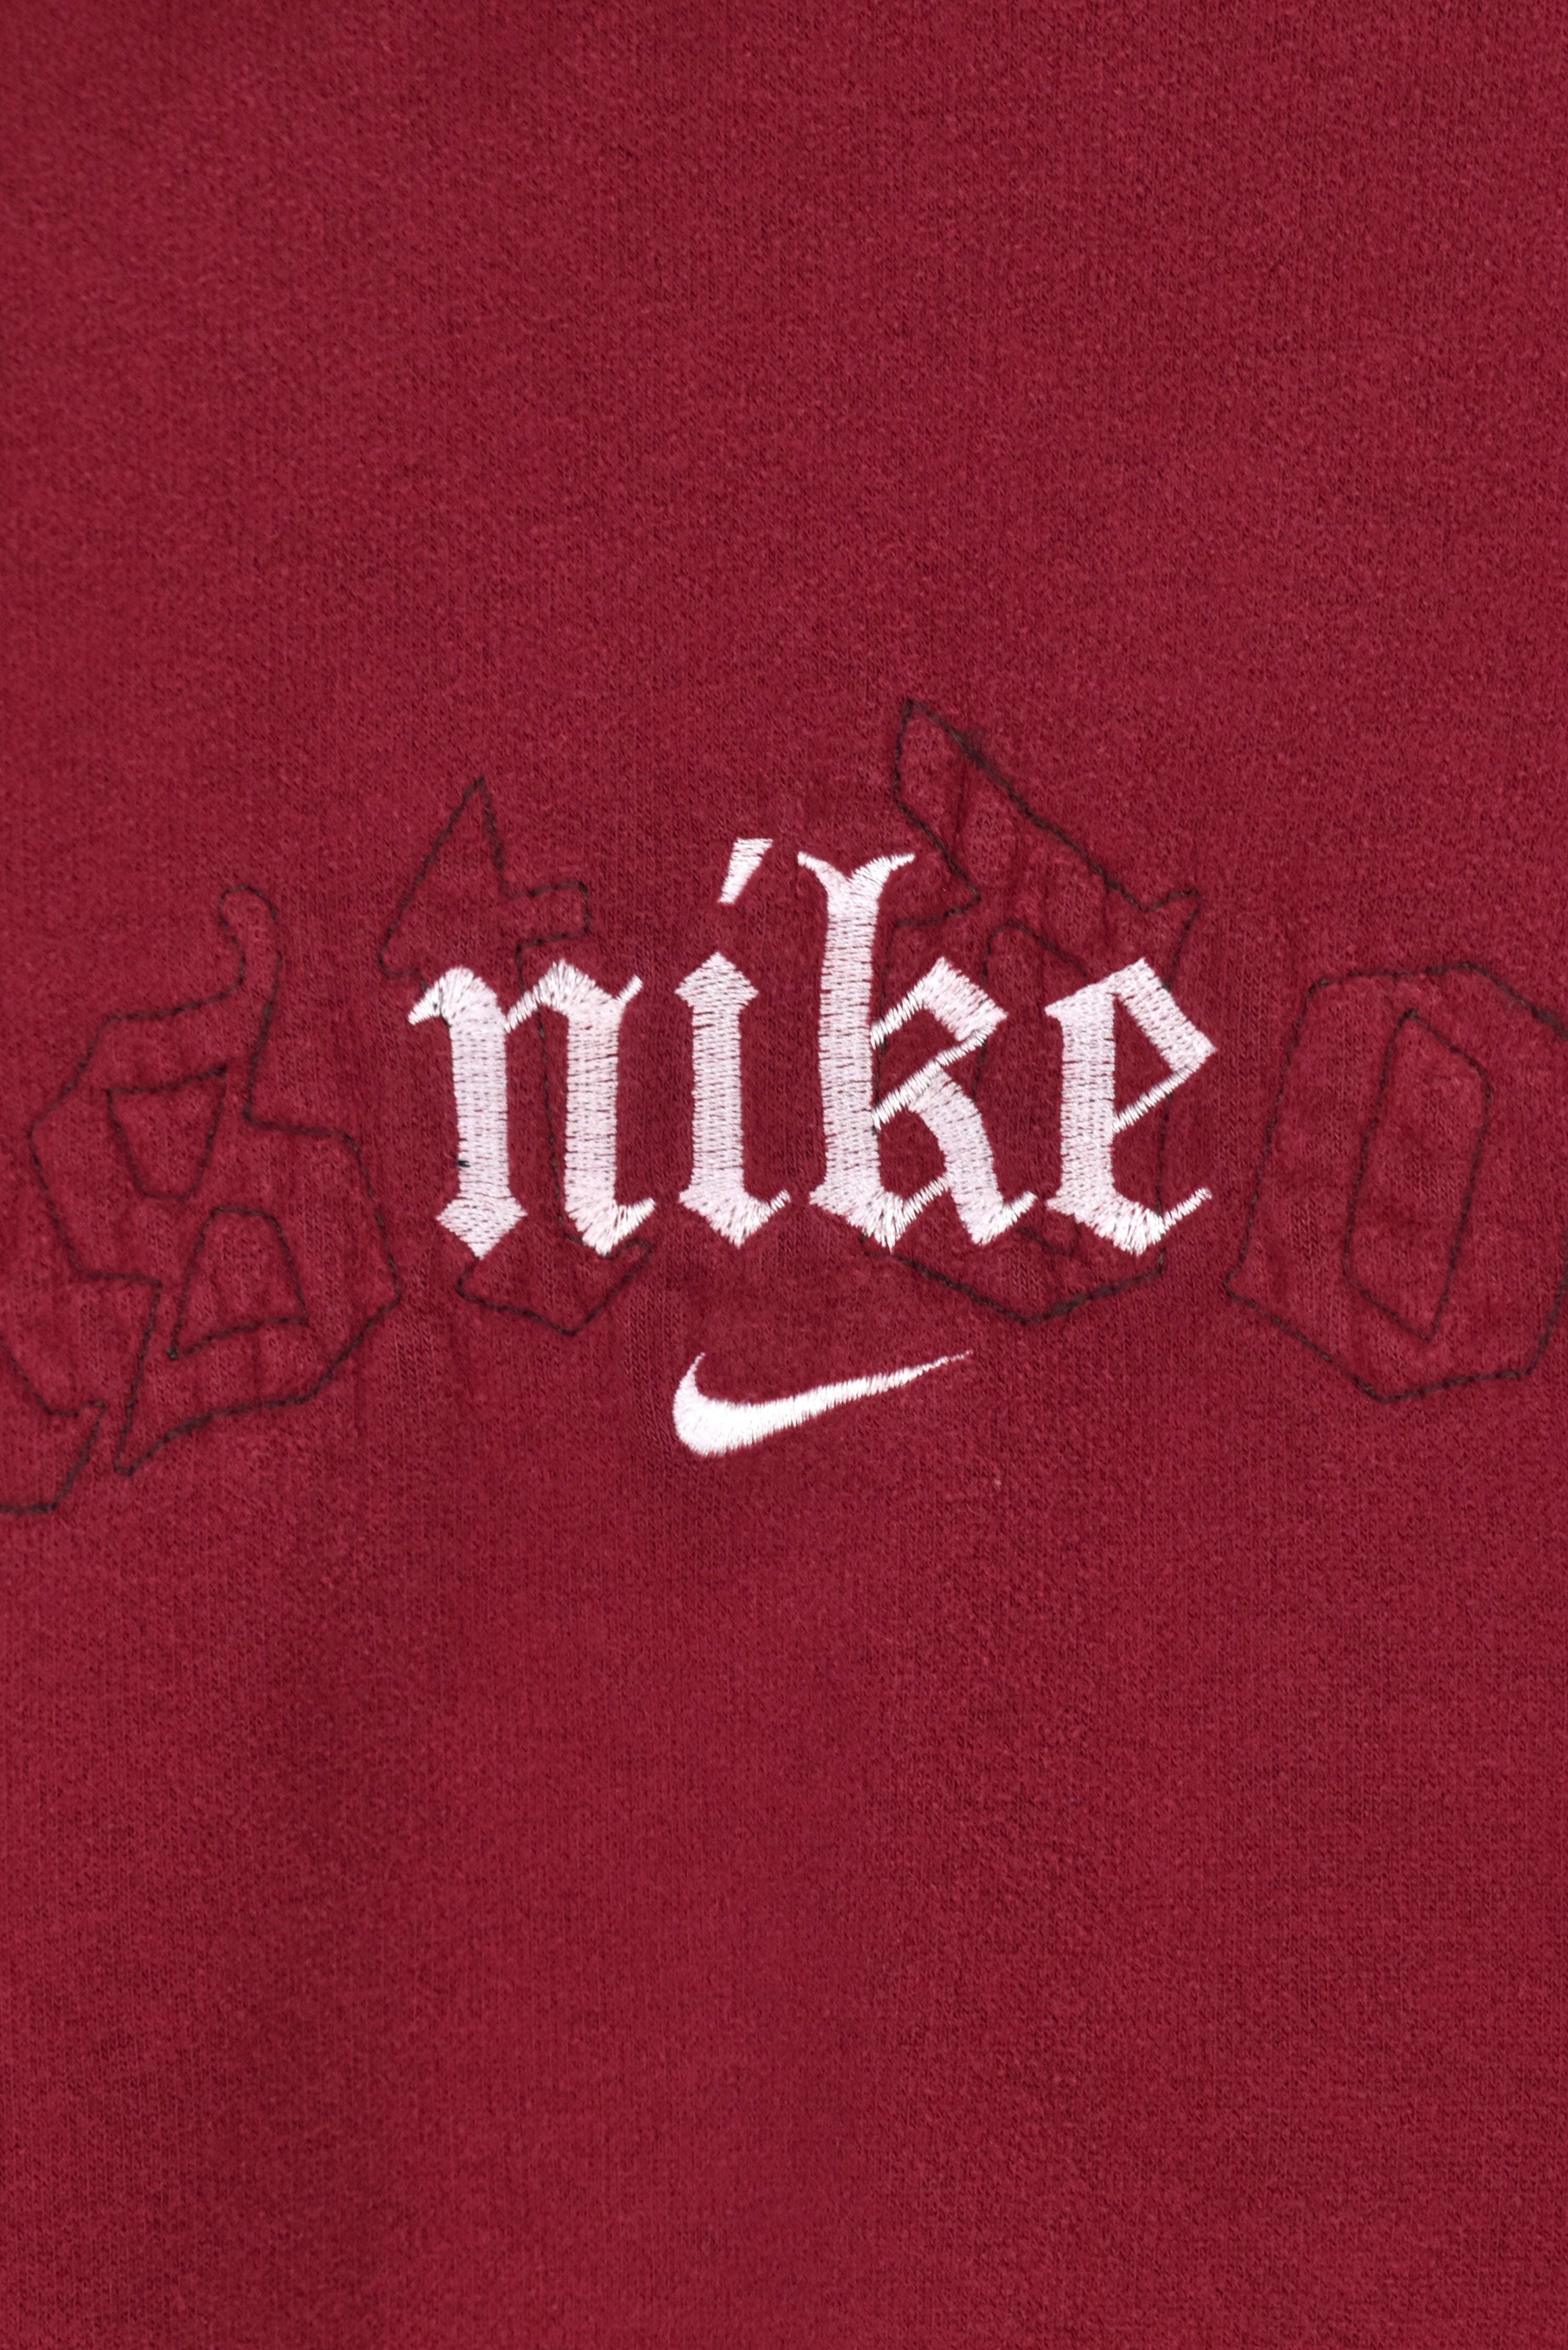 Vintage Nike hoodie (XL), red embroidered sweatshirt